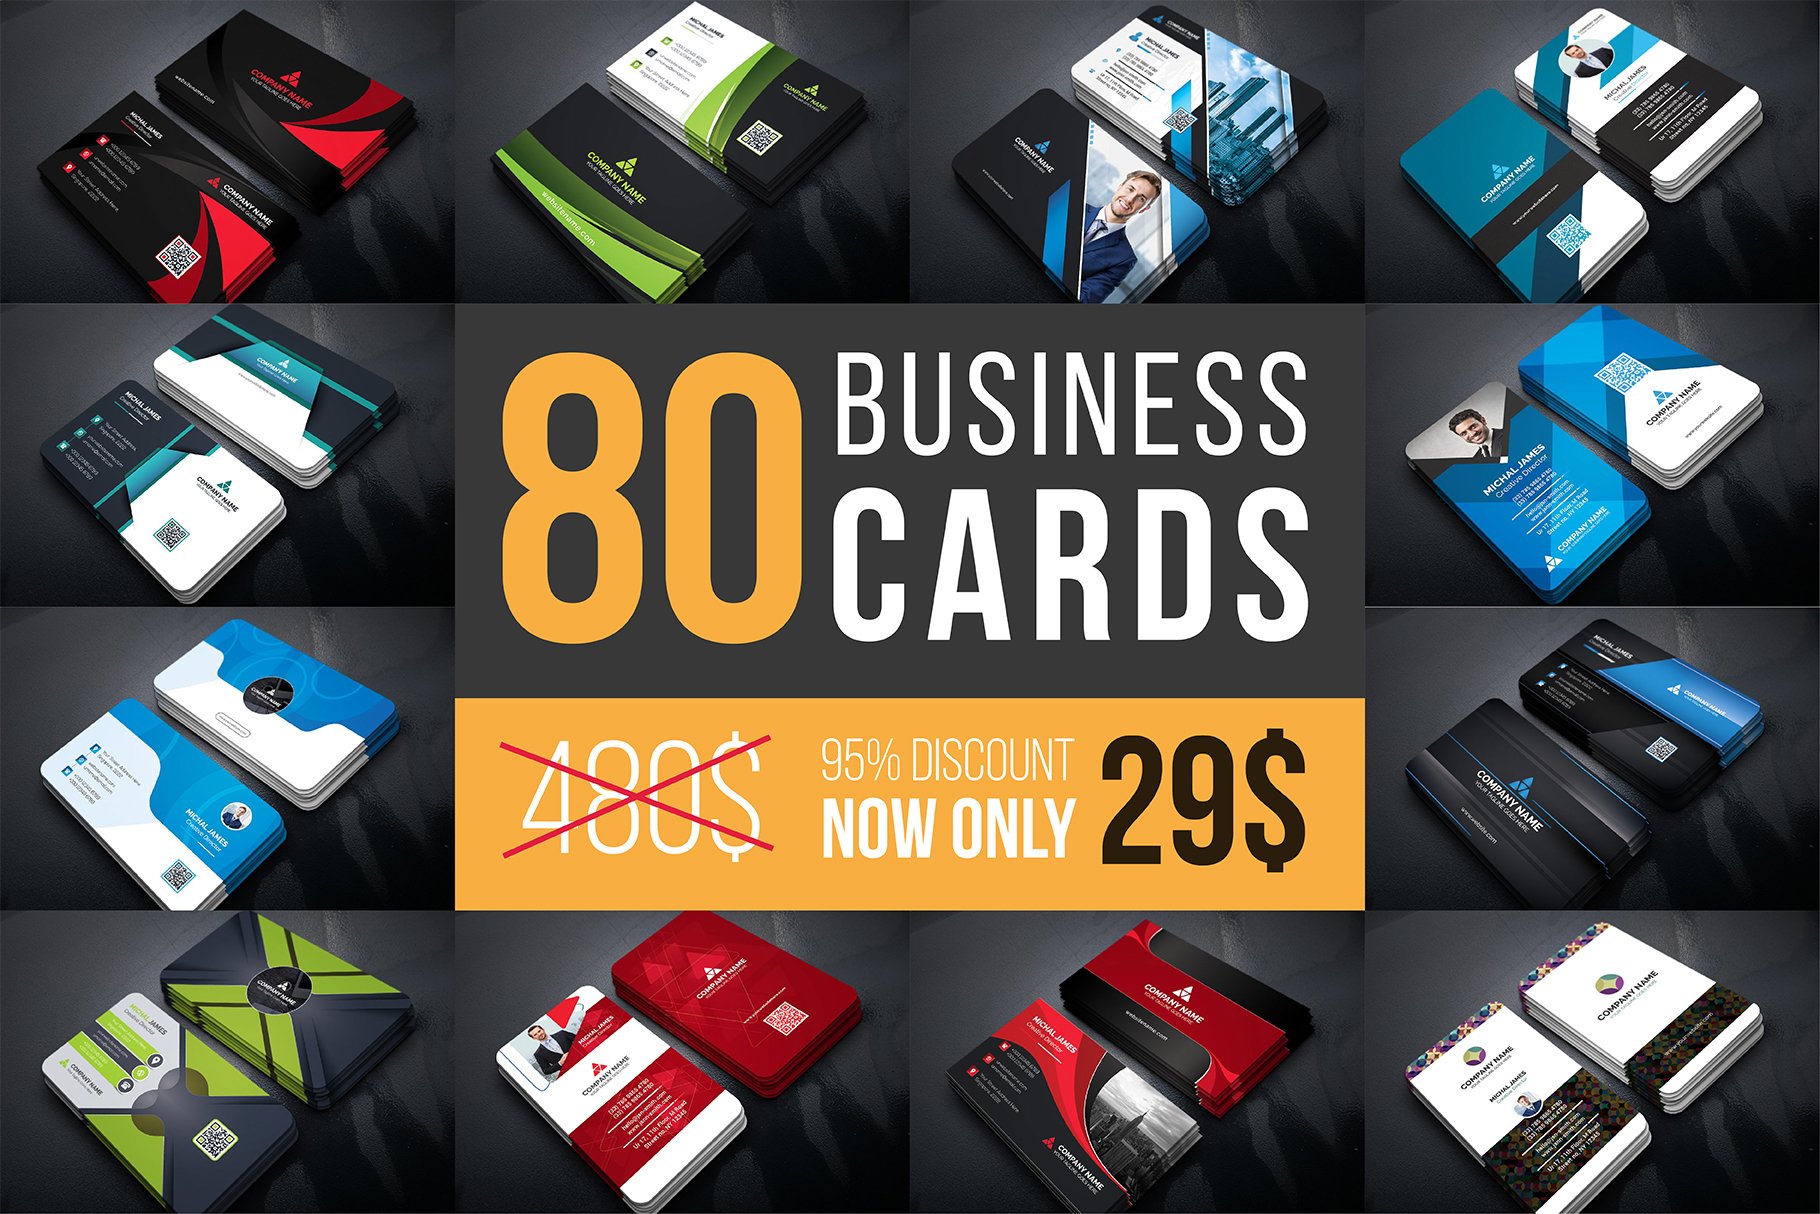 80 Business Cards Mega Bundle Free Download